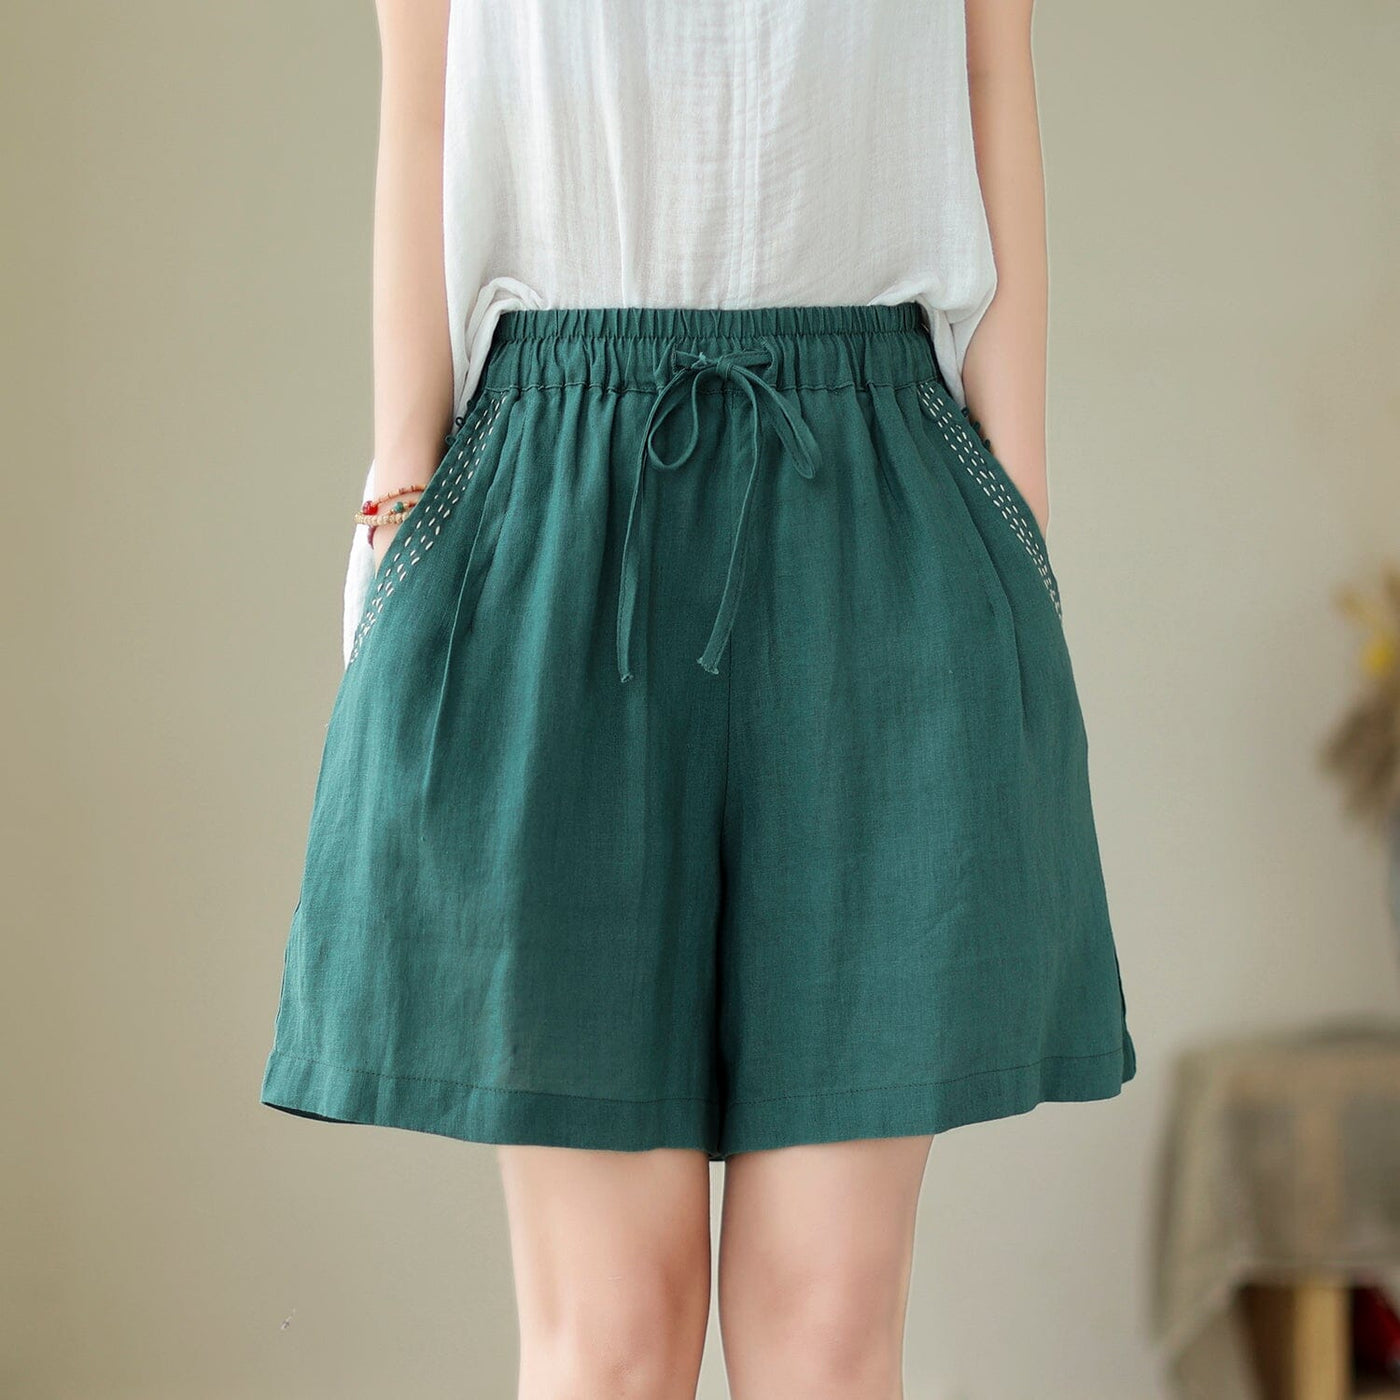 Women Summer Loose Casual Linen Shorts